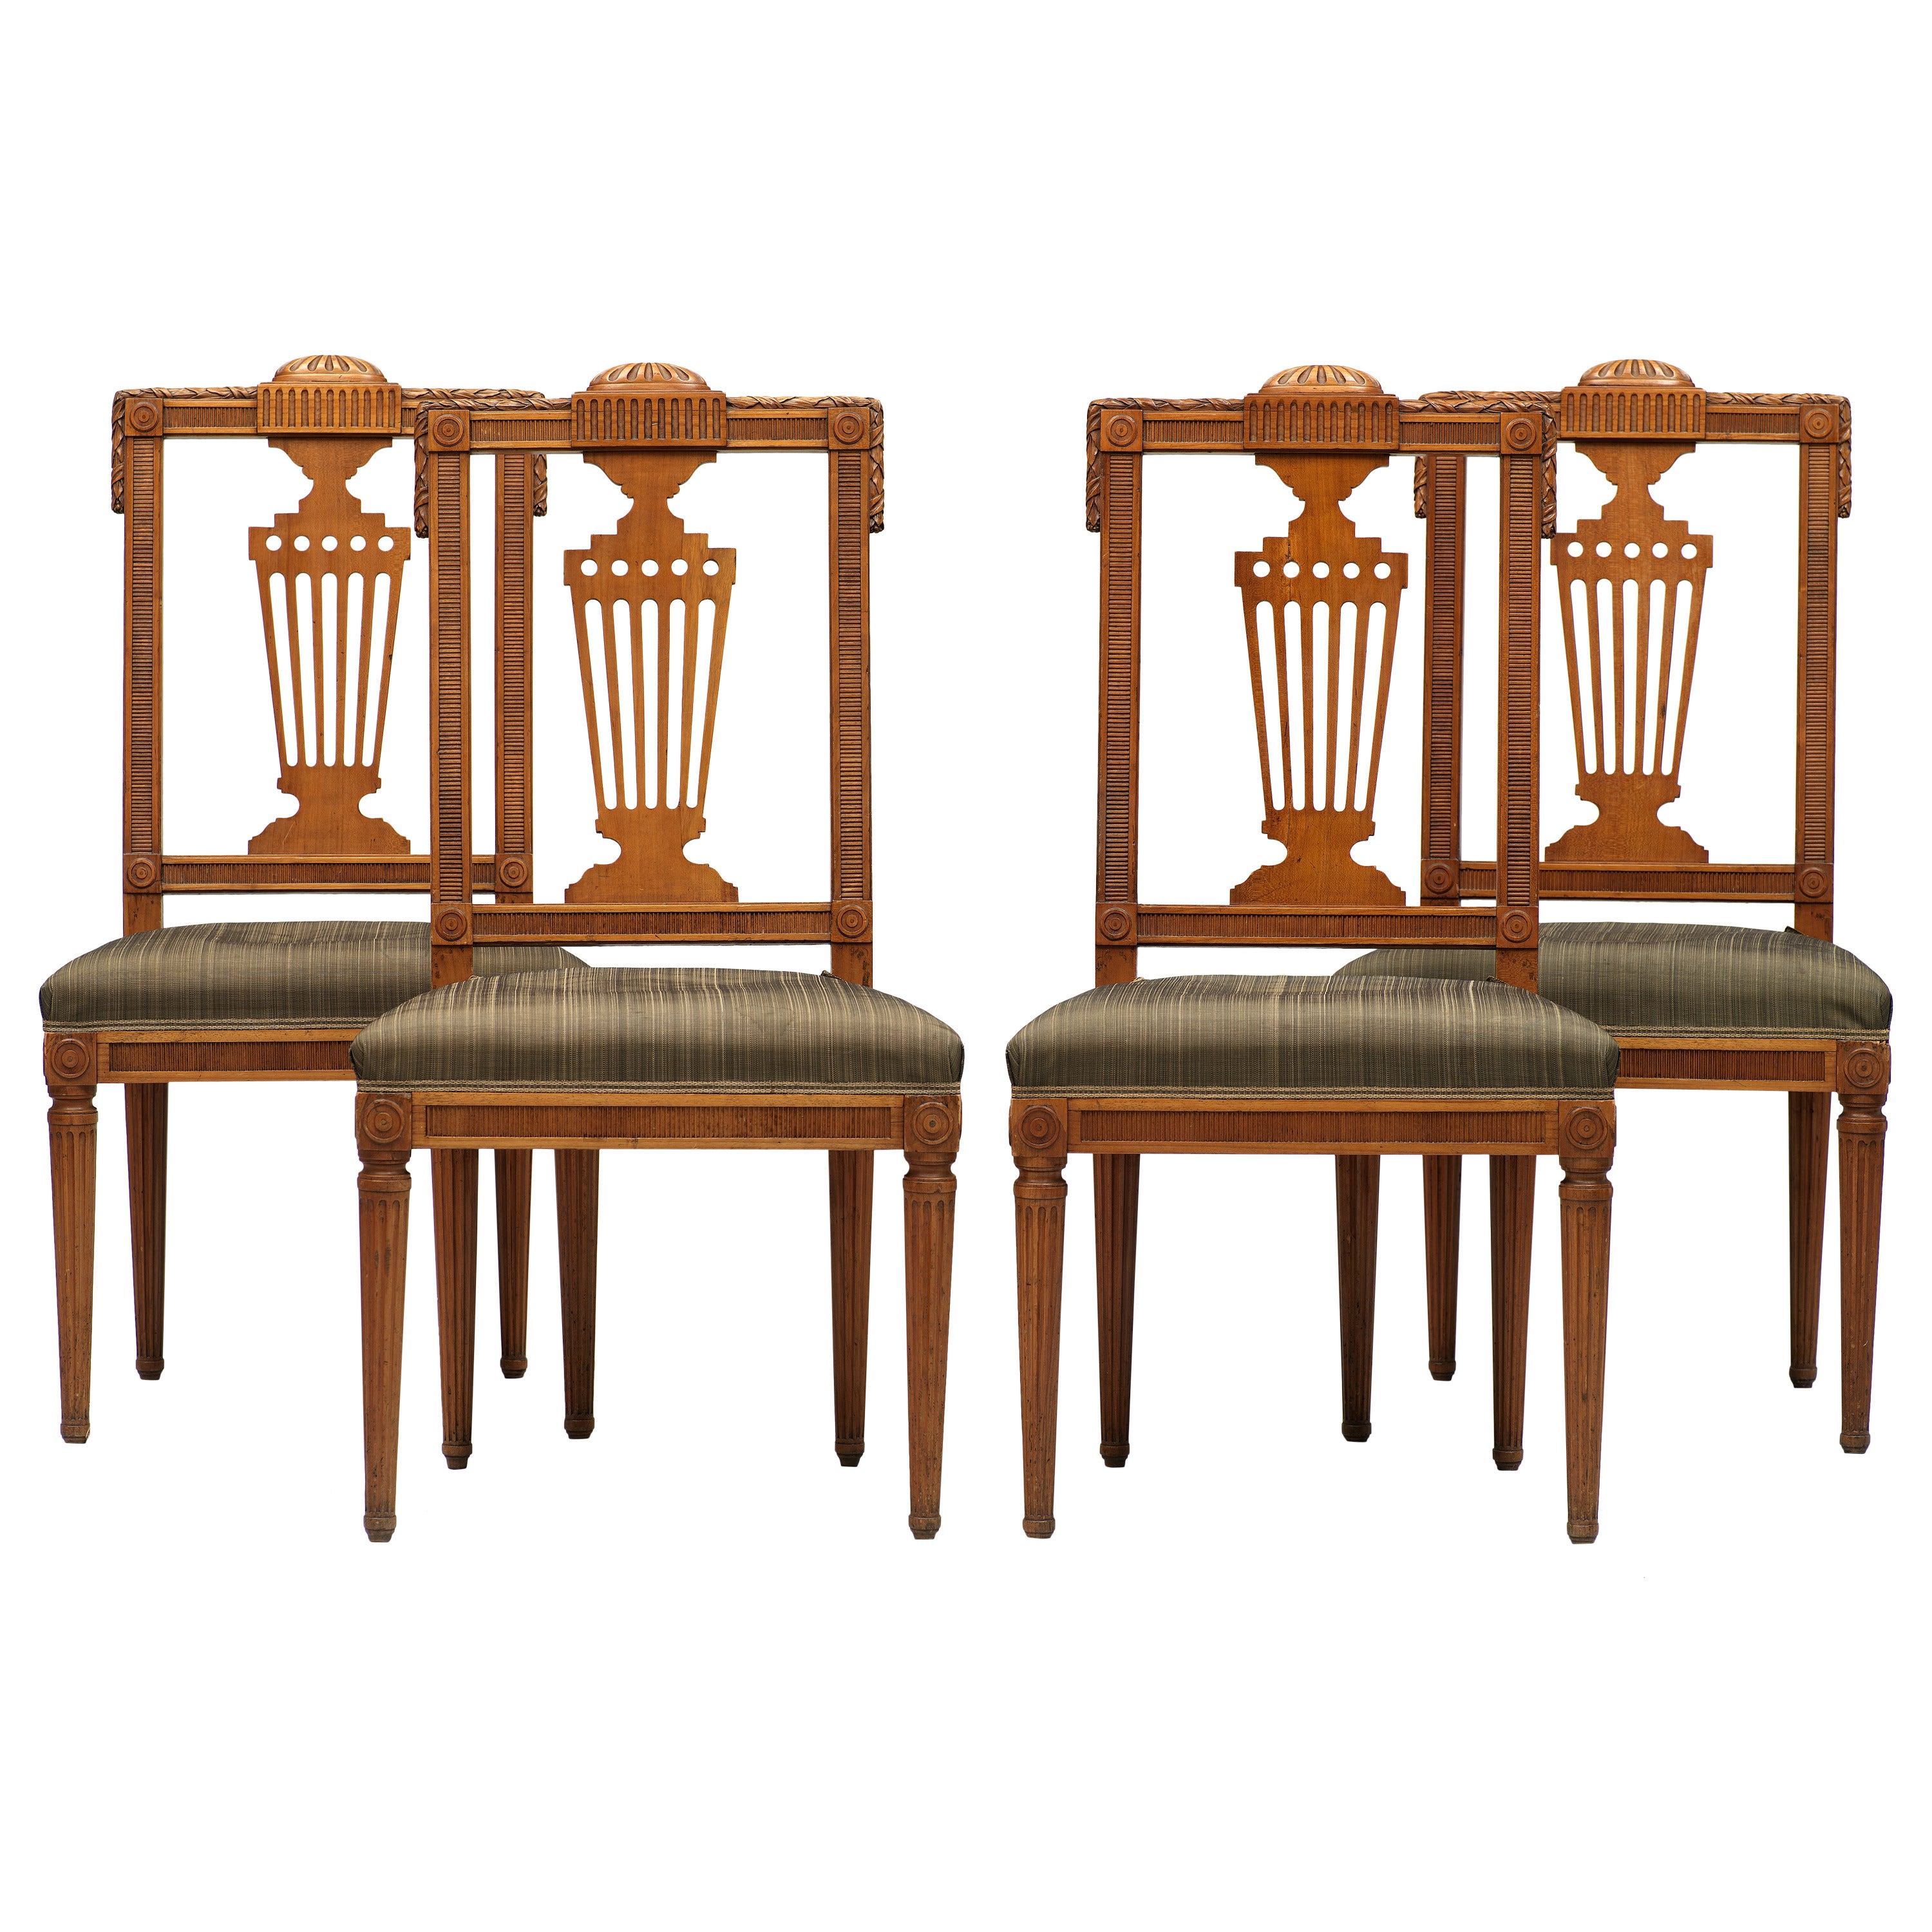 Ensemble de quatre chaises d'appoint néoclassiques allemandes de la fin du XVIIIe siècle, David Roentgen